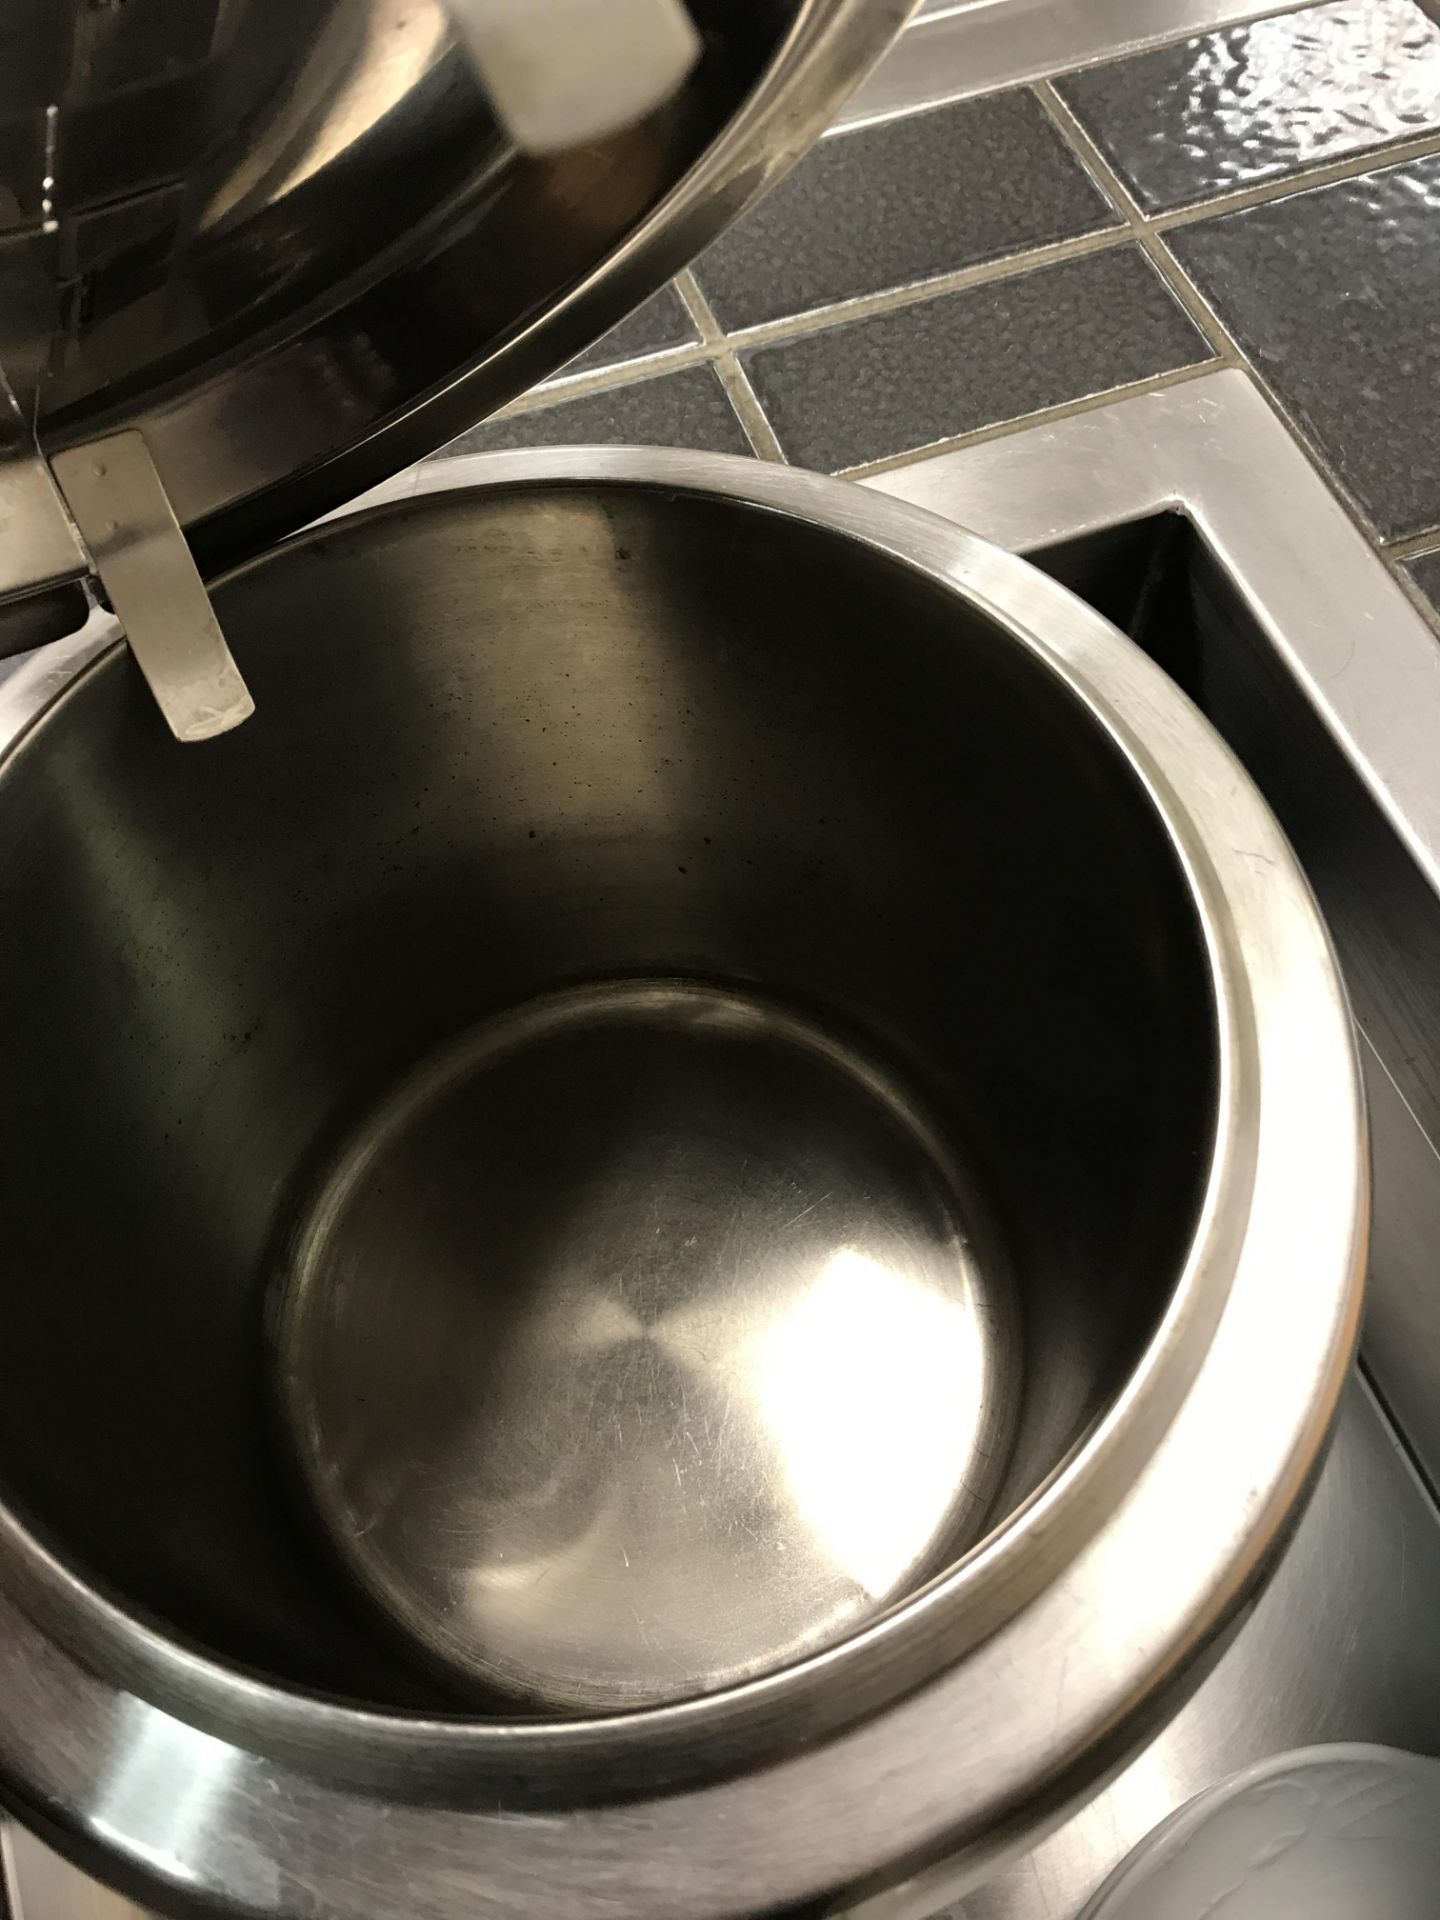 Buffalo soup kettle - Image 3 of 3